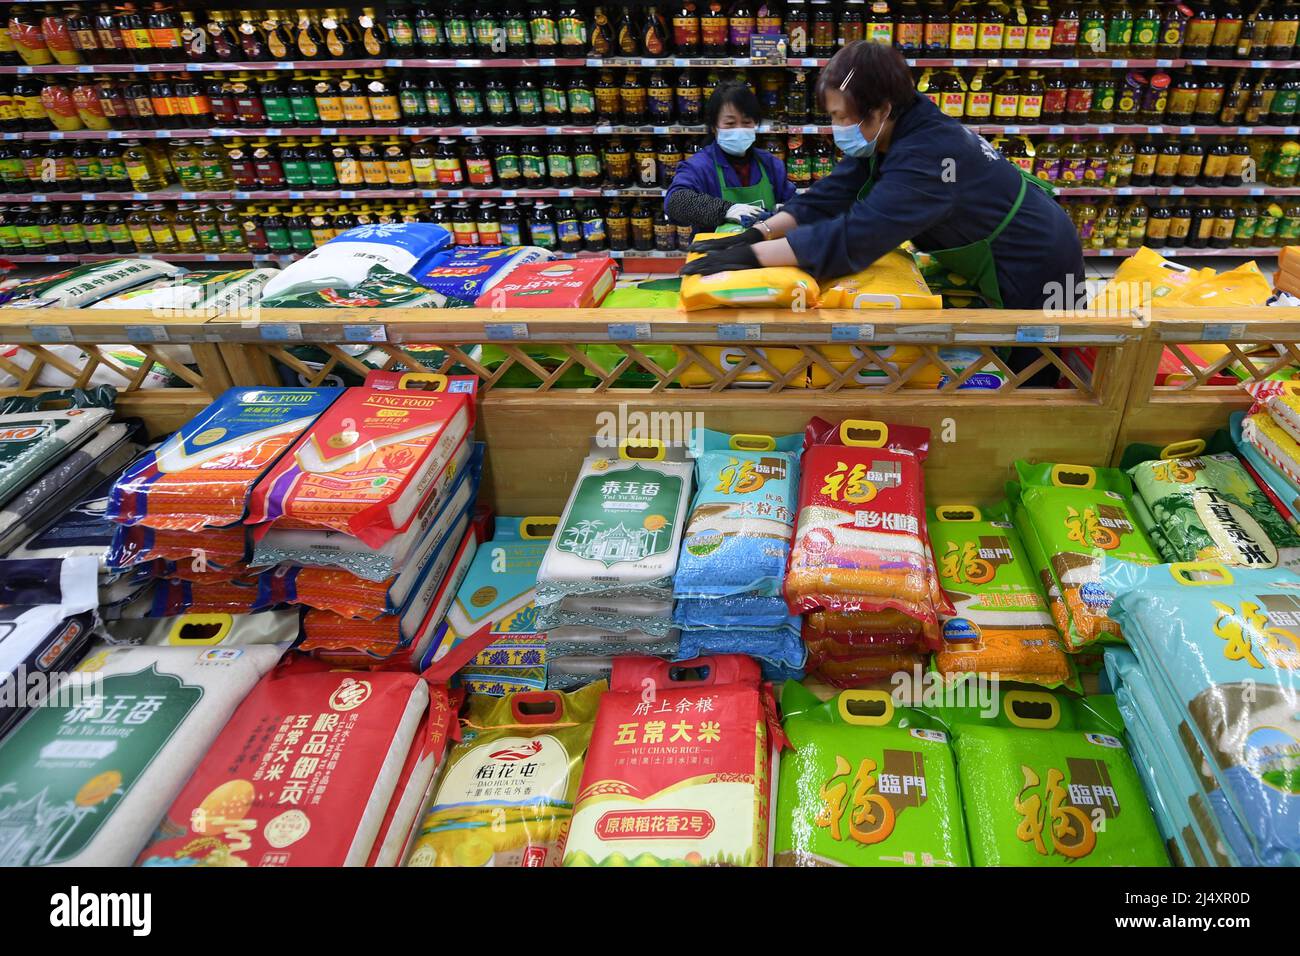 Xining, Chinas Provinz Qinghai. 18. April 2022. Mitarbeiter arbeiten in einem Supermarkt in der Stadt Xining, nordwestlich der chinesischen Provinz Qinghai, 18. April 2022. Die lokalen Behörden haben Maßnahmen ergriffen, um die Versorgung sicherzustellen, und in der Zwischenzeit haben sie Teams eingerichtet, um lebende Güter für die Bewohner der kontrollierten Gemeinden zu kaufen und zu verteilen, während das jüngste Wiederaufleben von COVID-19-Infektionen aufkommt. Quelle: Fan Peissen/Xinhua/Alamy Live News Stockfoto